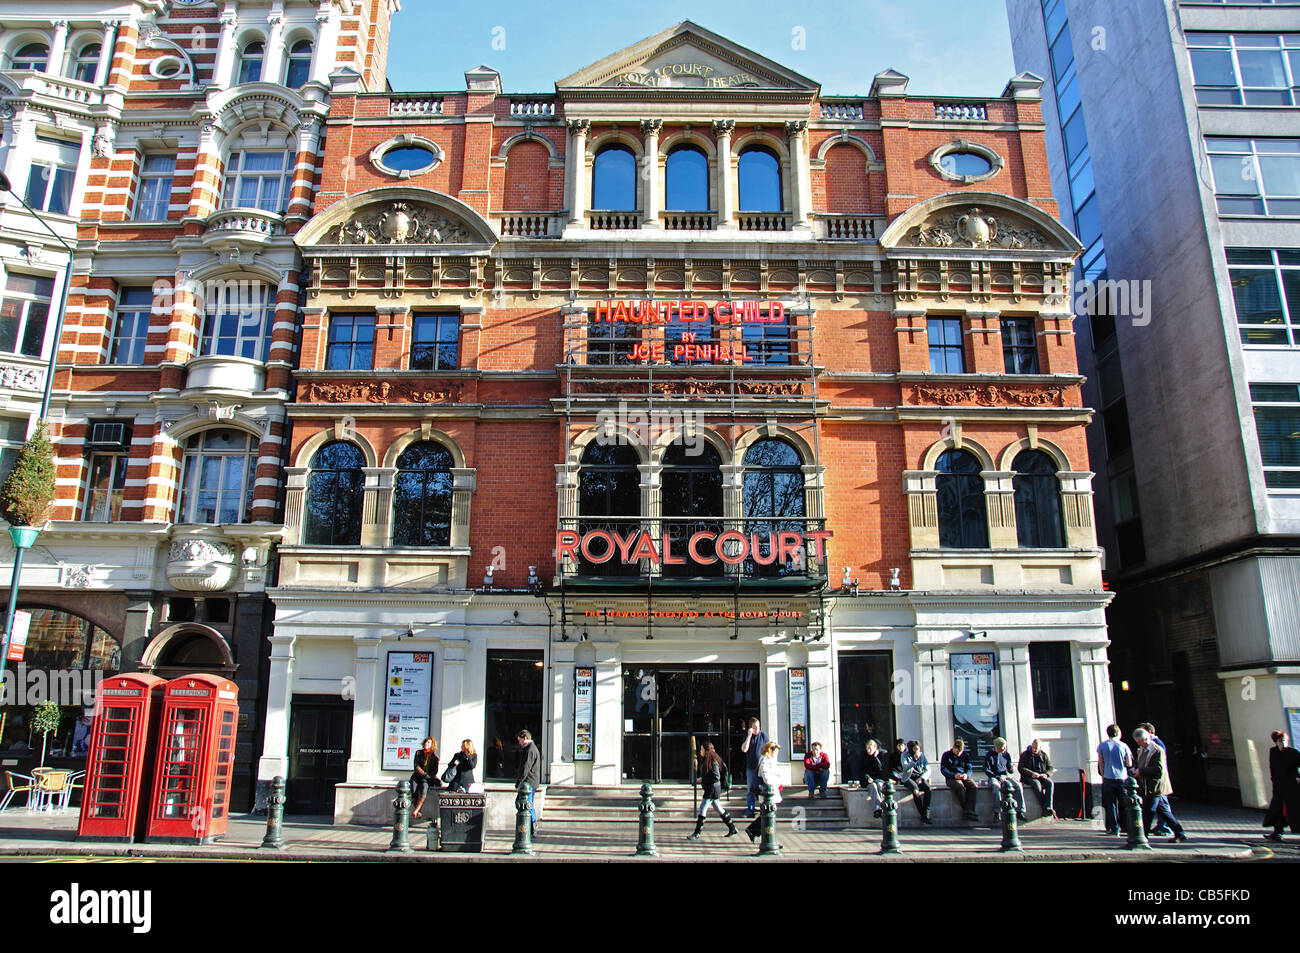 Royal Court Theatre, Sloane Square, Chelsea, le quartier royal de Kensington et Chelsea, Greater London, Angleterre, Royaume-Uni Banque D'Images